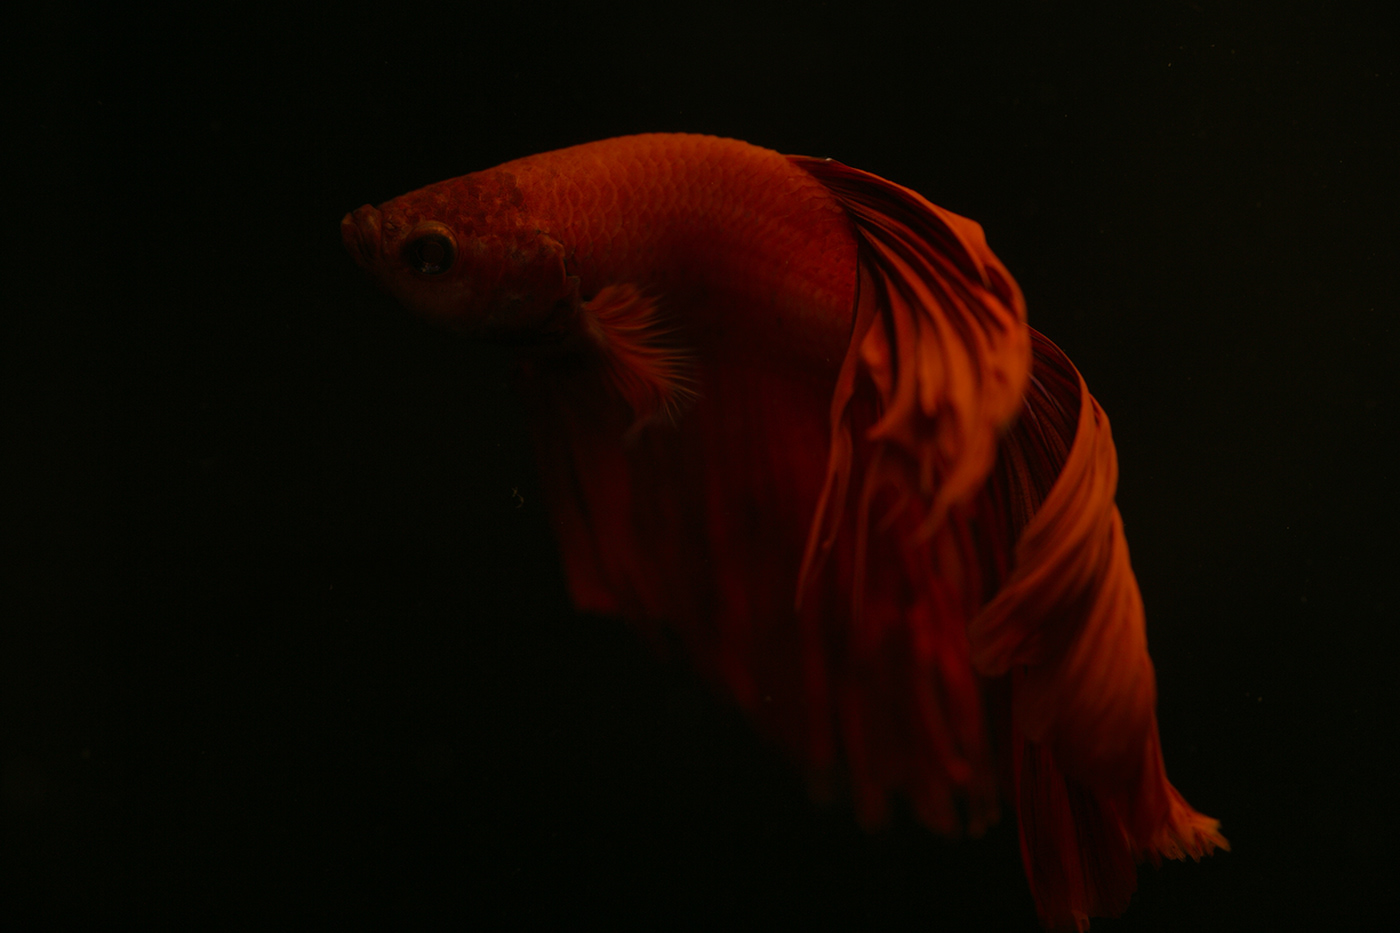 Behance Photography  macro Pet fish portrait